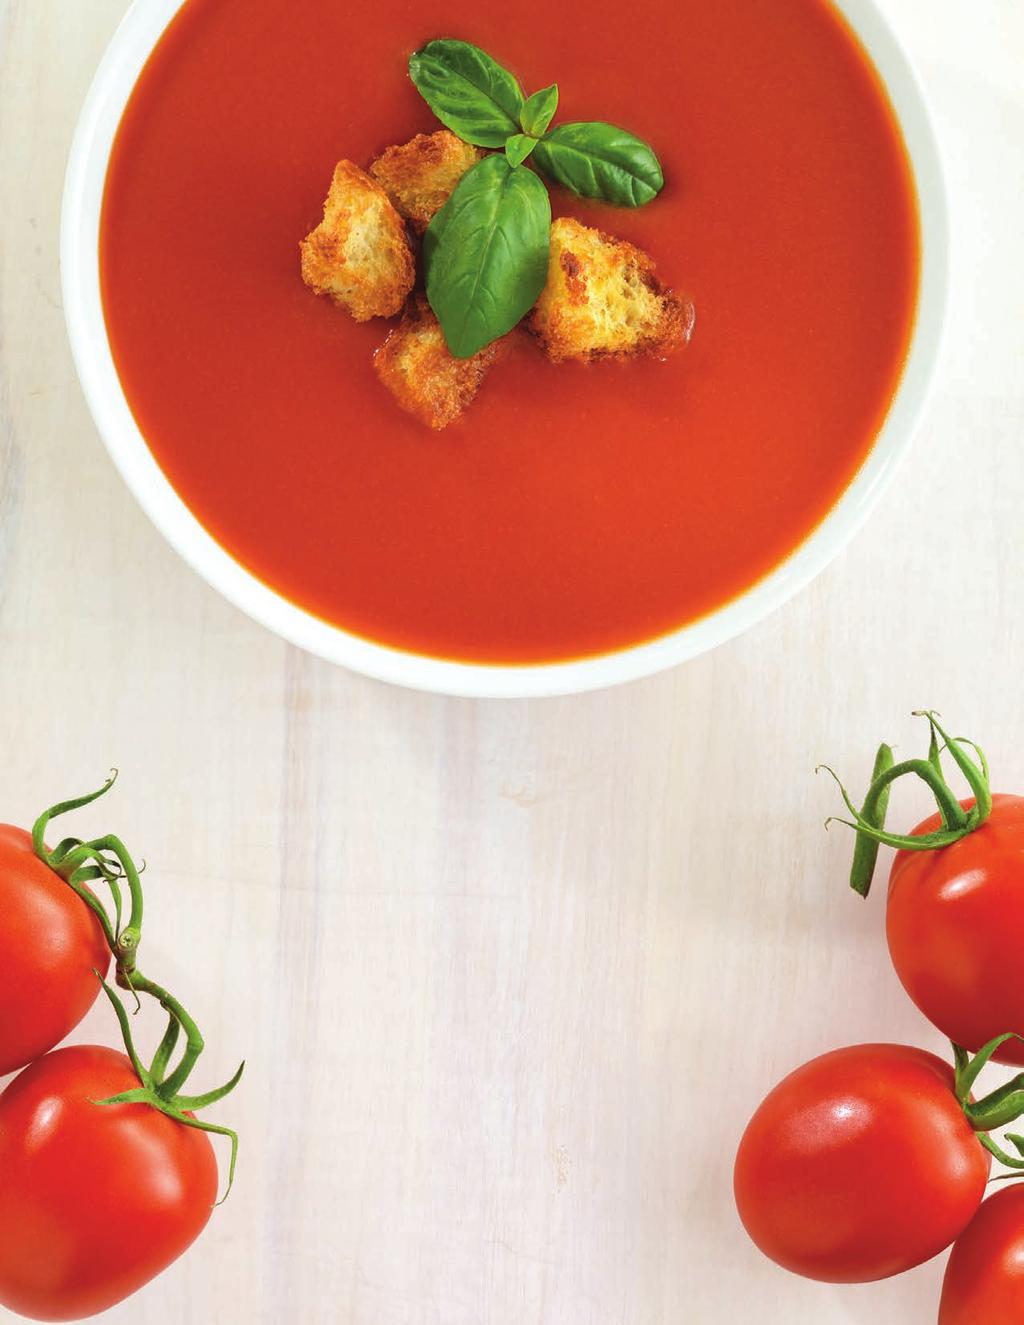 Soupe aux tomates Classique de Campbell s 00016 la tradition SIMPLIFIÉE Certaines recettes favorites sont le résultat de plusieurs années de perfectionnement. Mais qui a tout ce temps à y consacrer?